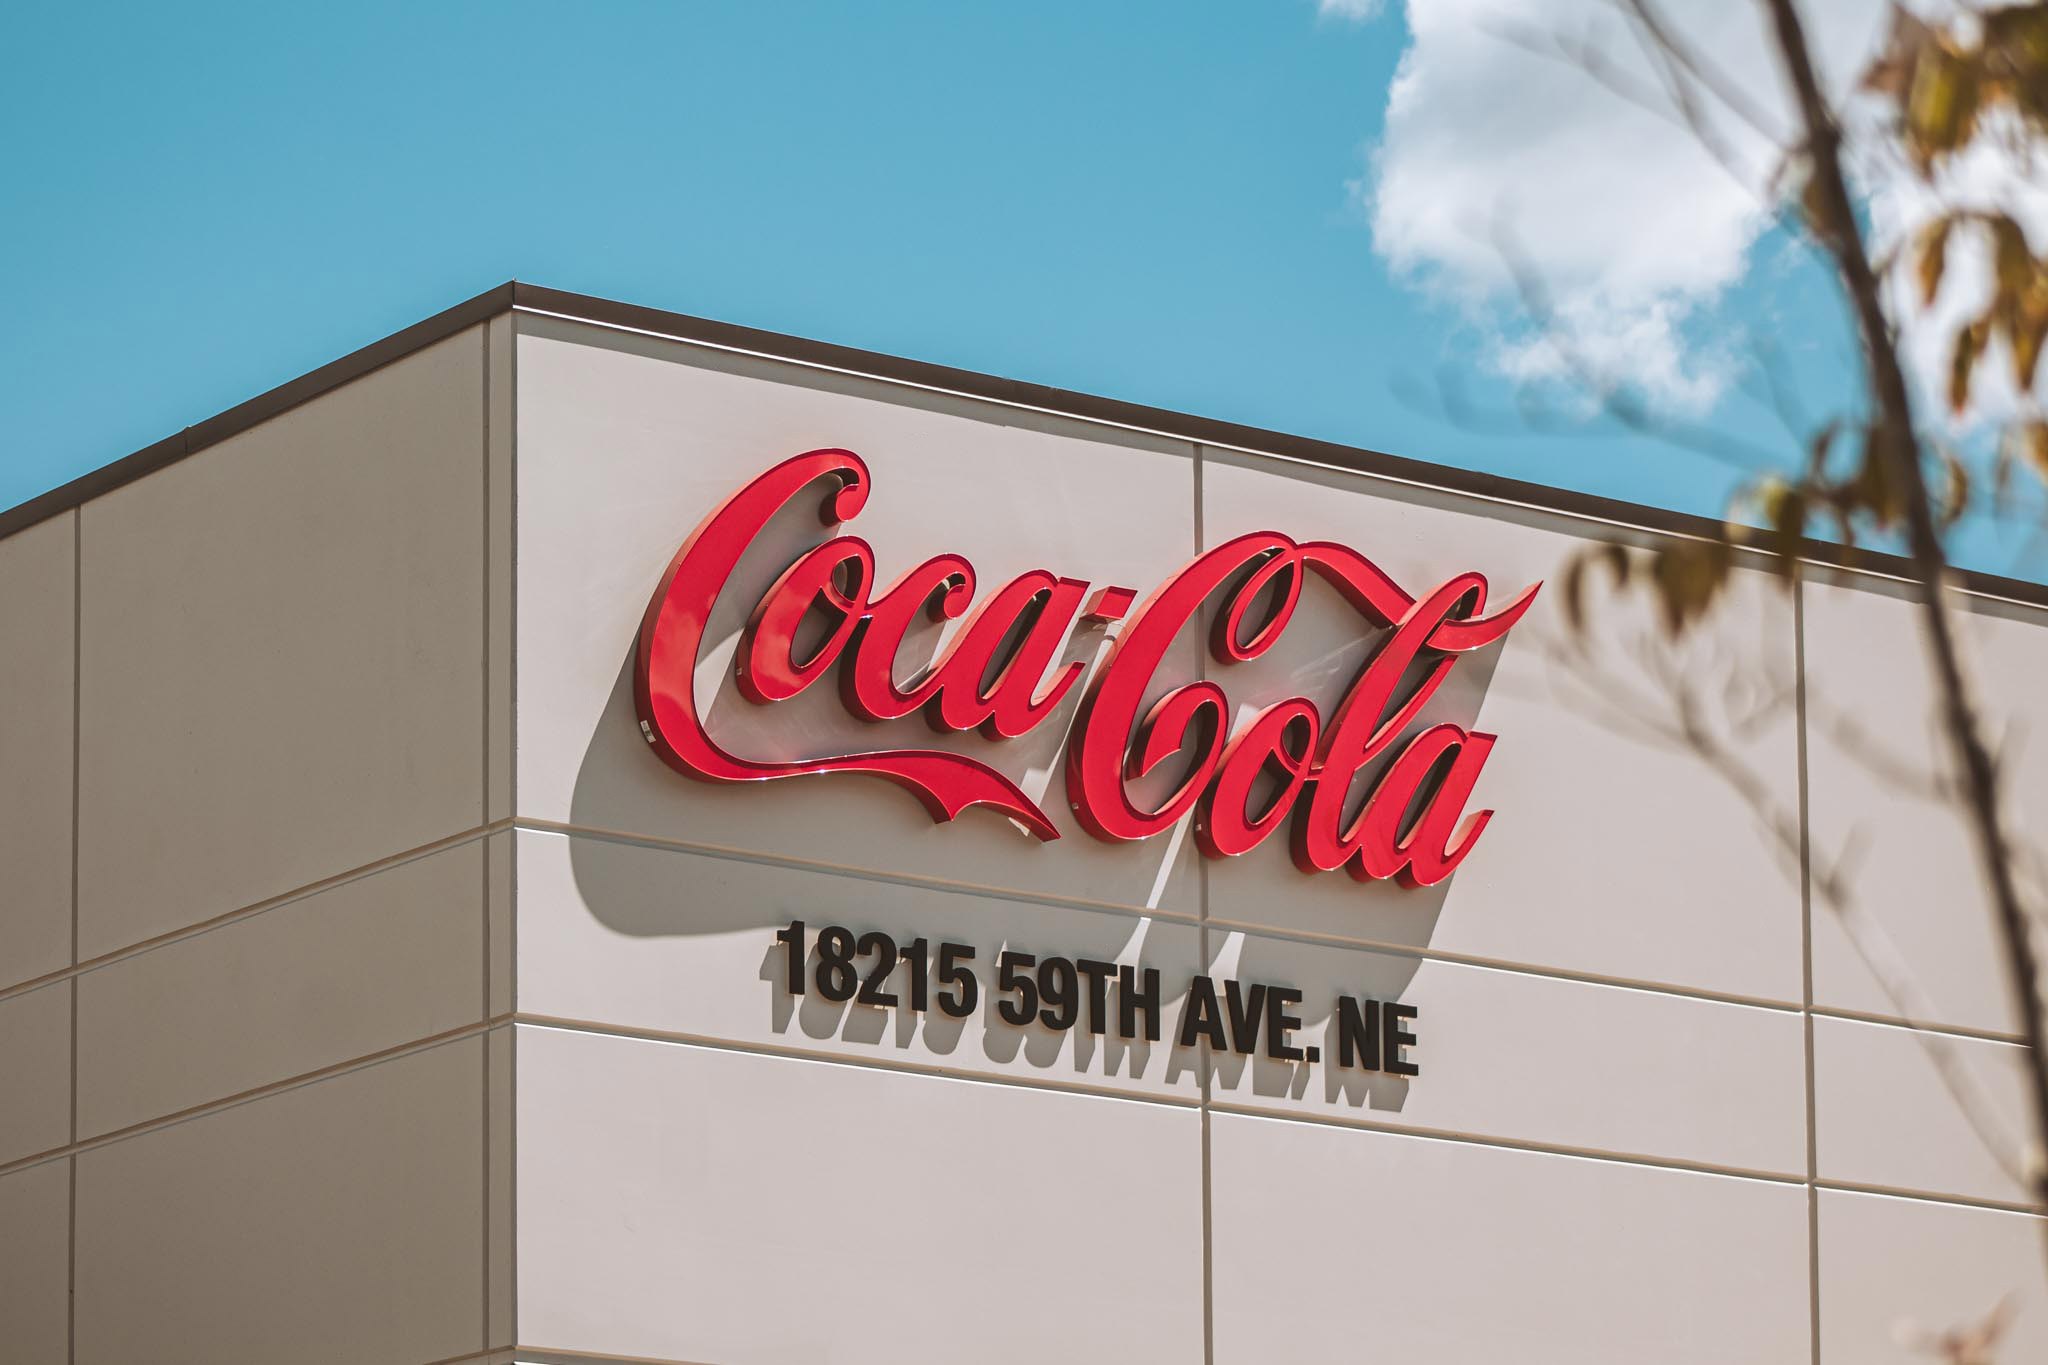 Swire Coca-Cola building sign